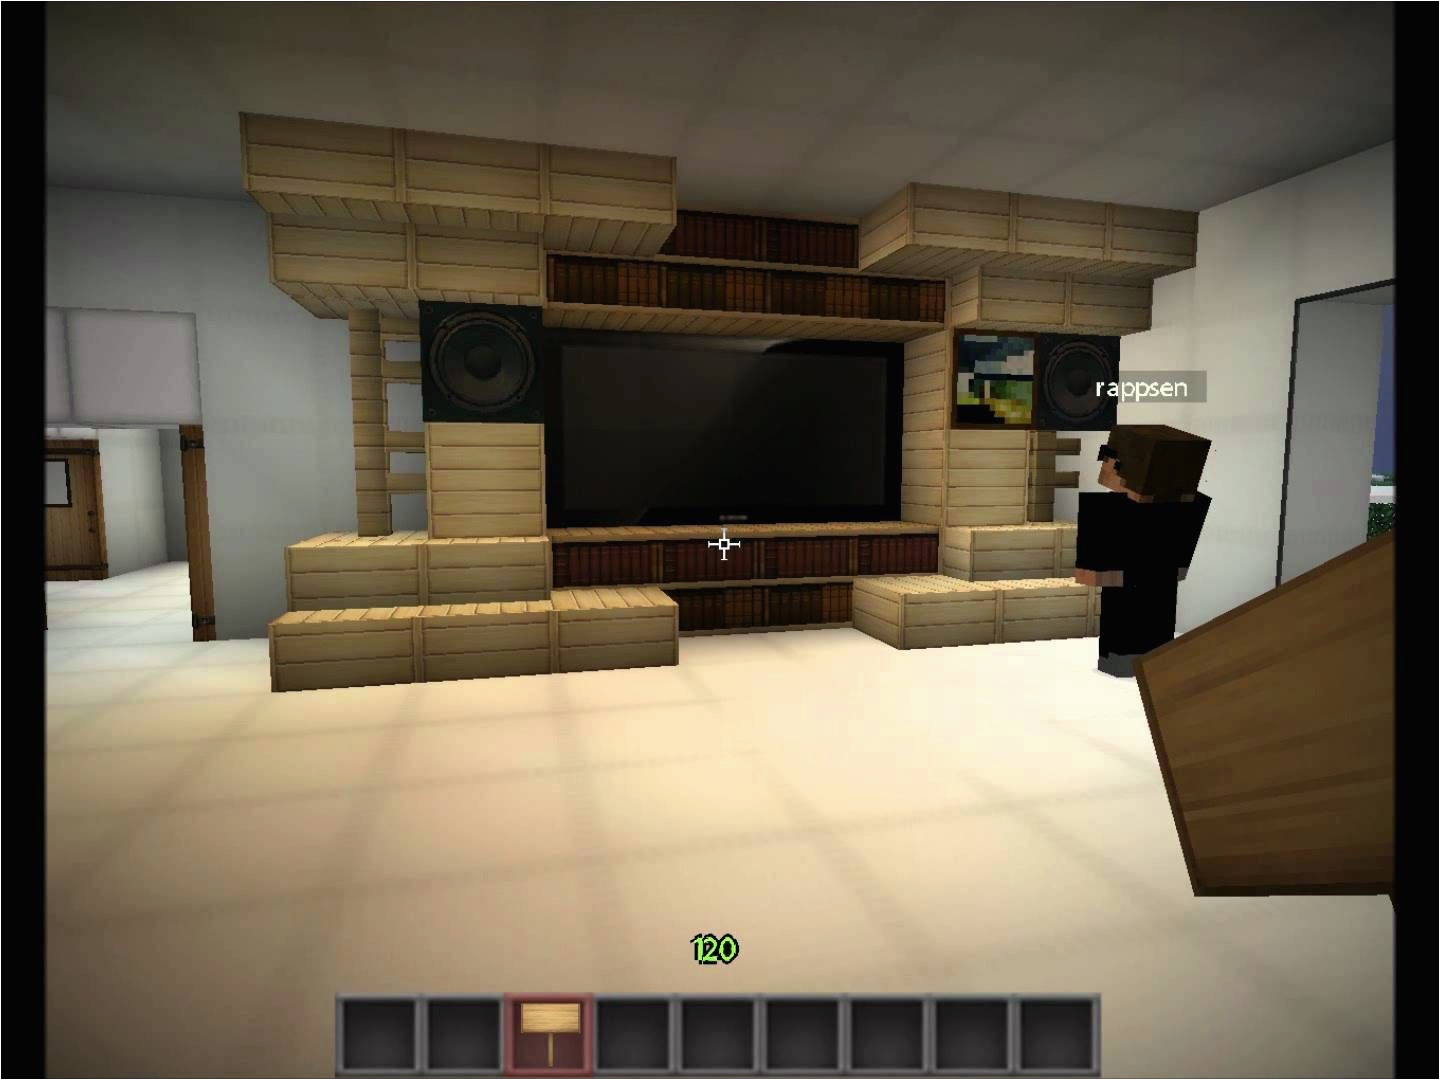 Minecraft Schlafzimmer Modern Minecraft Inneneinrichtung Wohnzimmer Wohndesign Ideen